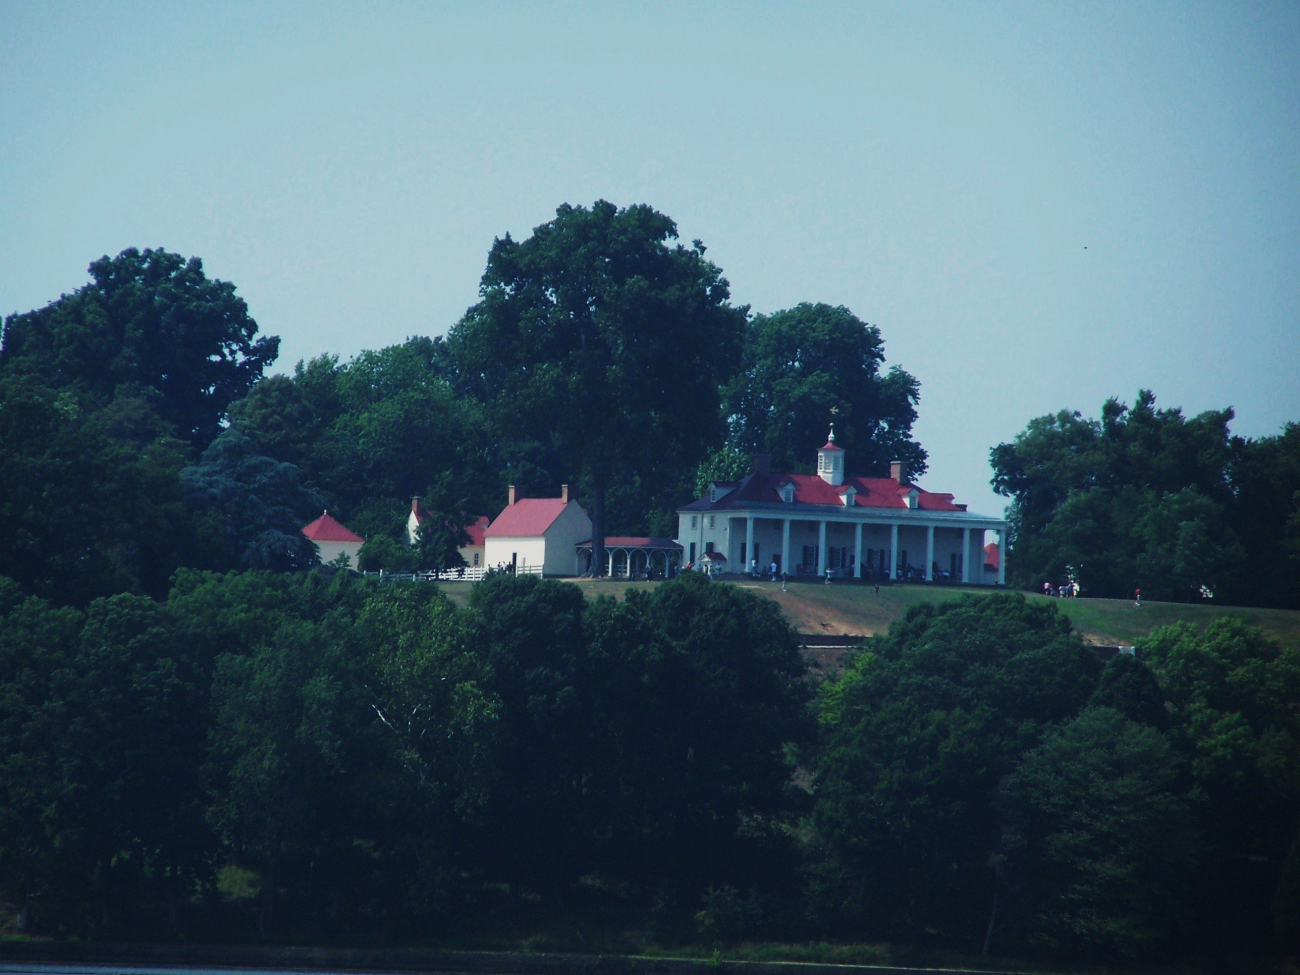 Mount Vernon as seen from the Potomac River